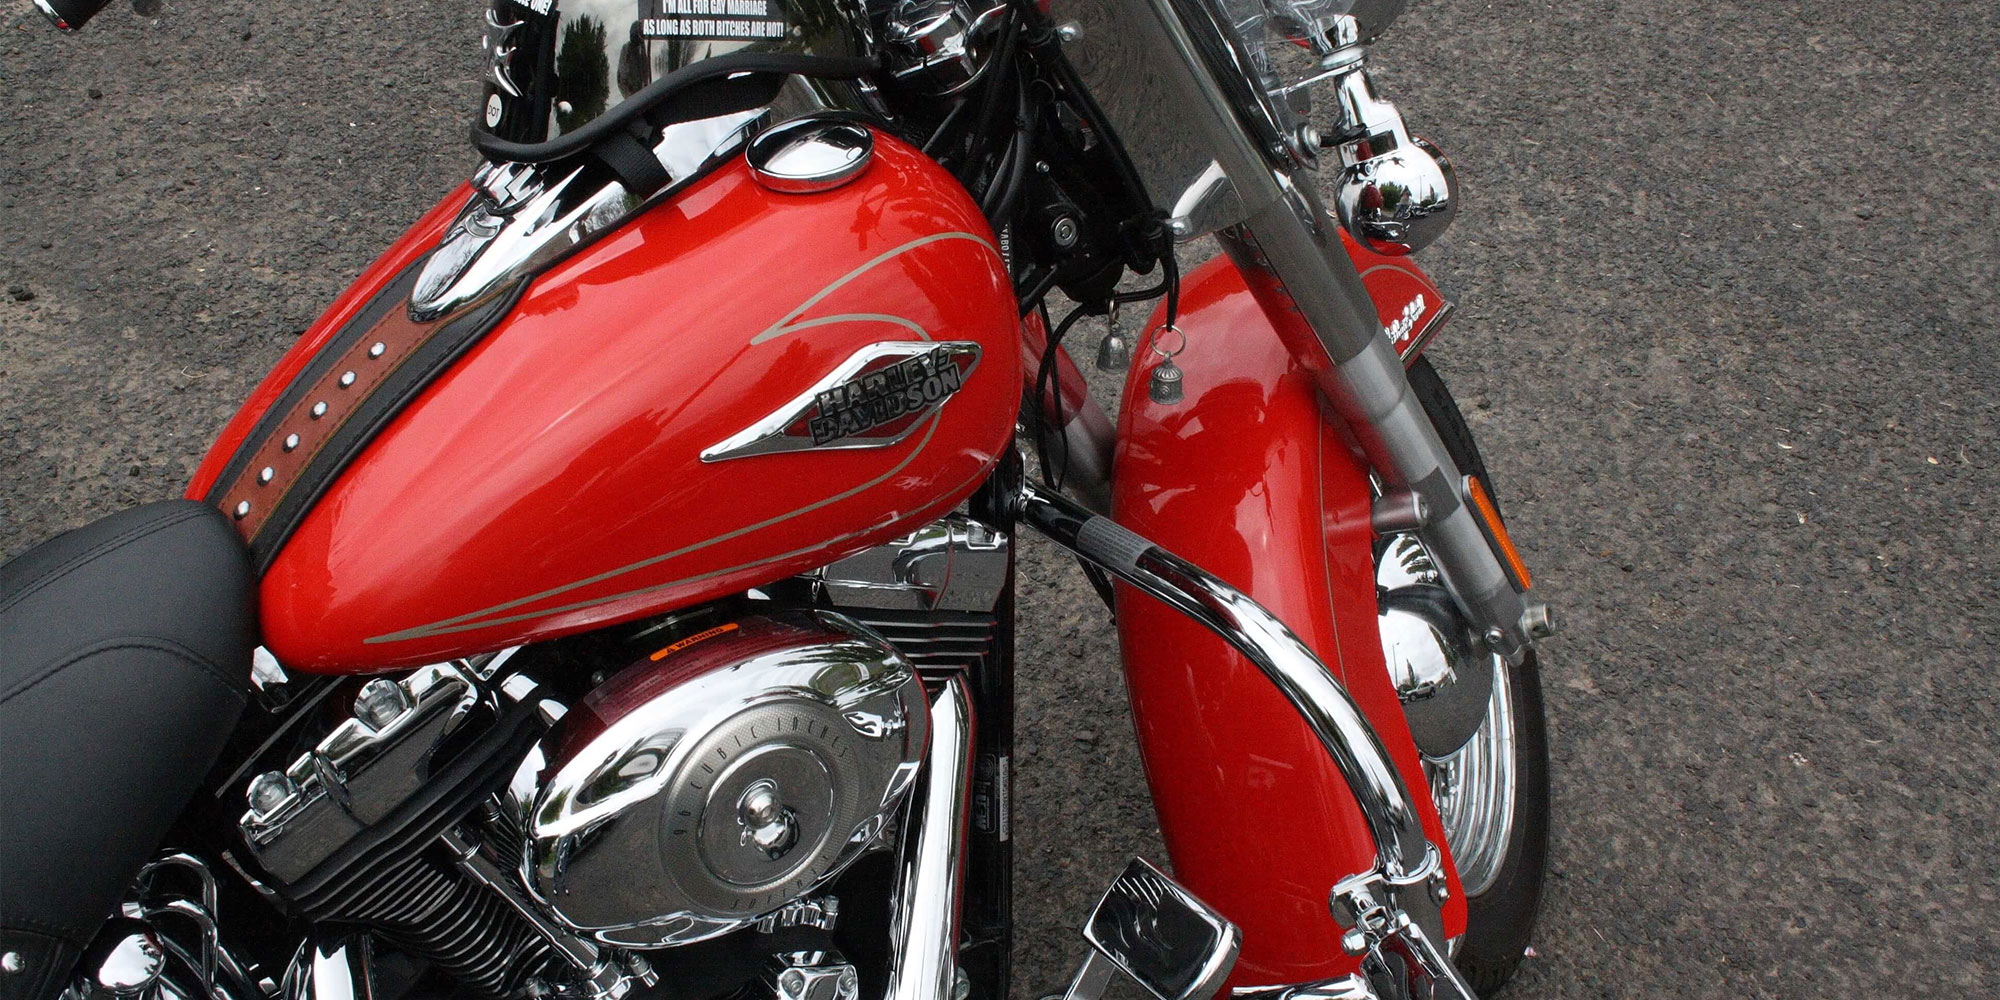 Чистый и блестящий мотоцикл с ярко-красным баком и крылом.